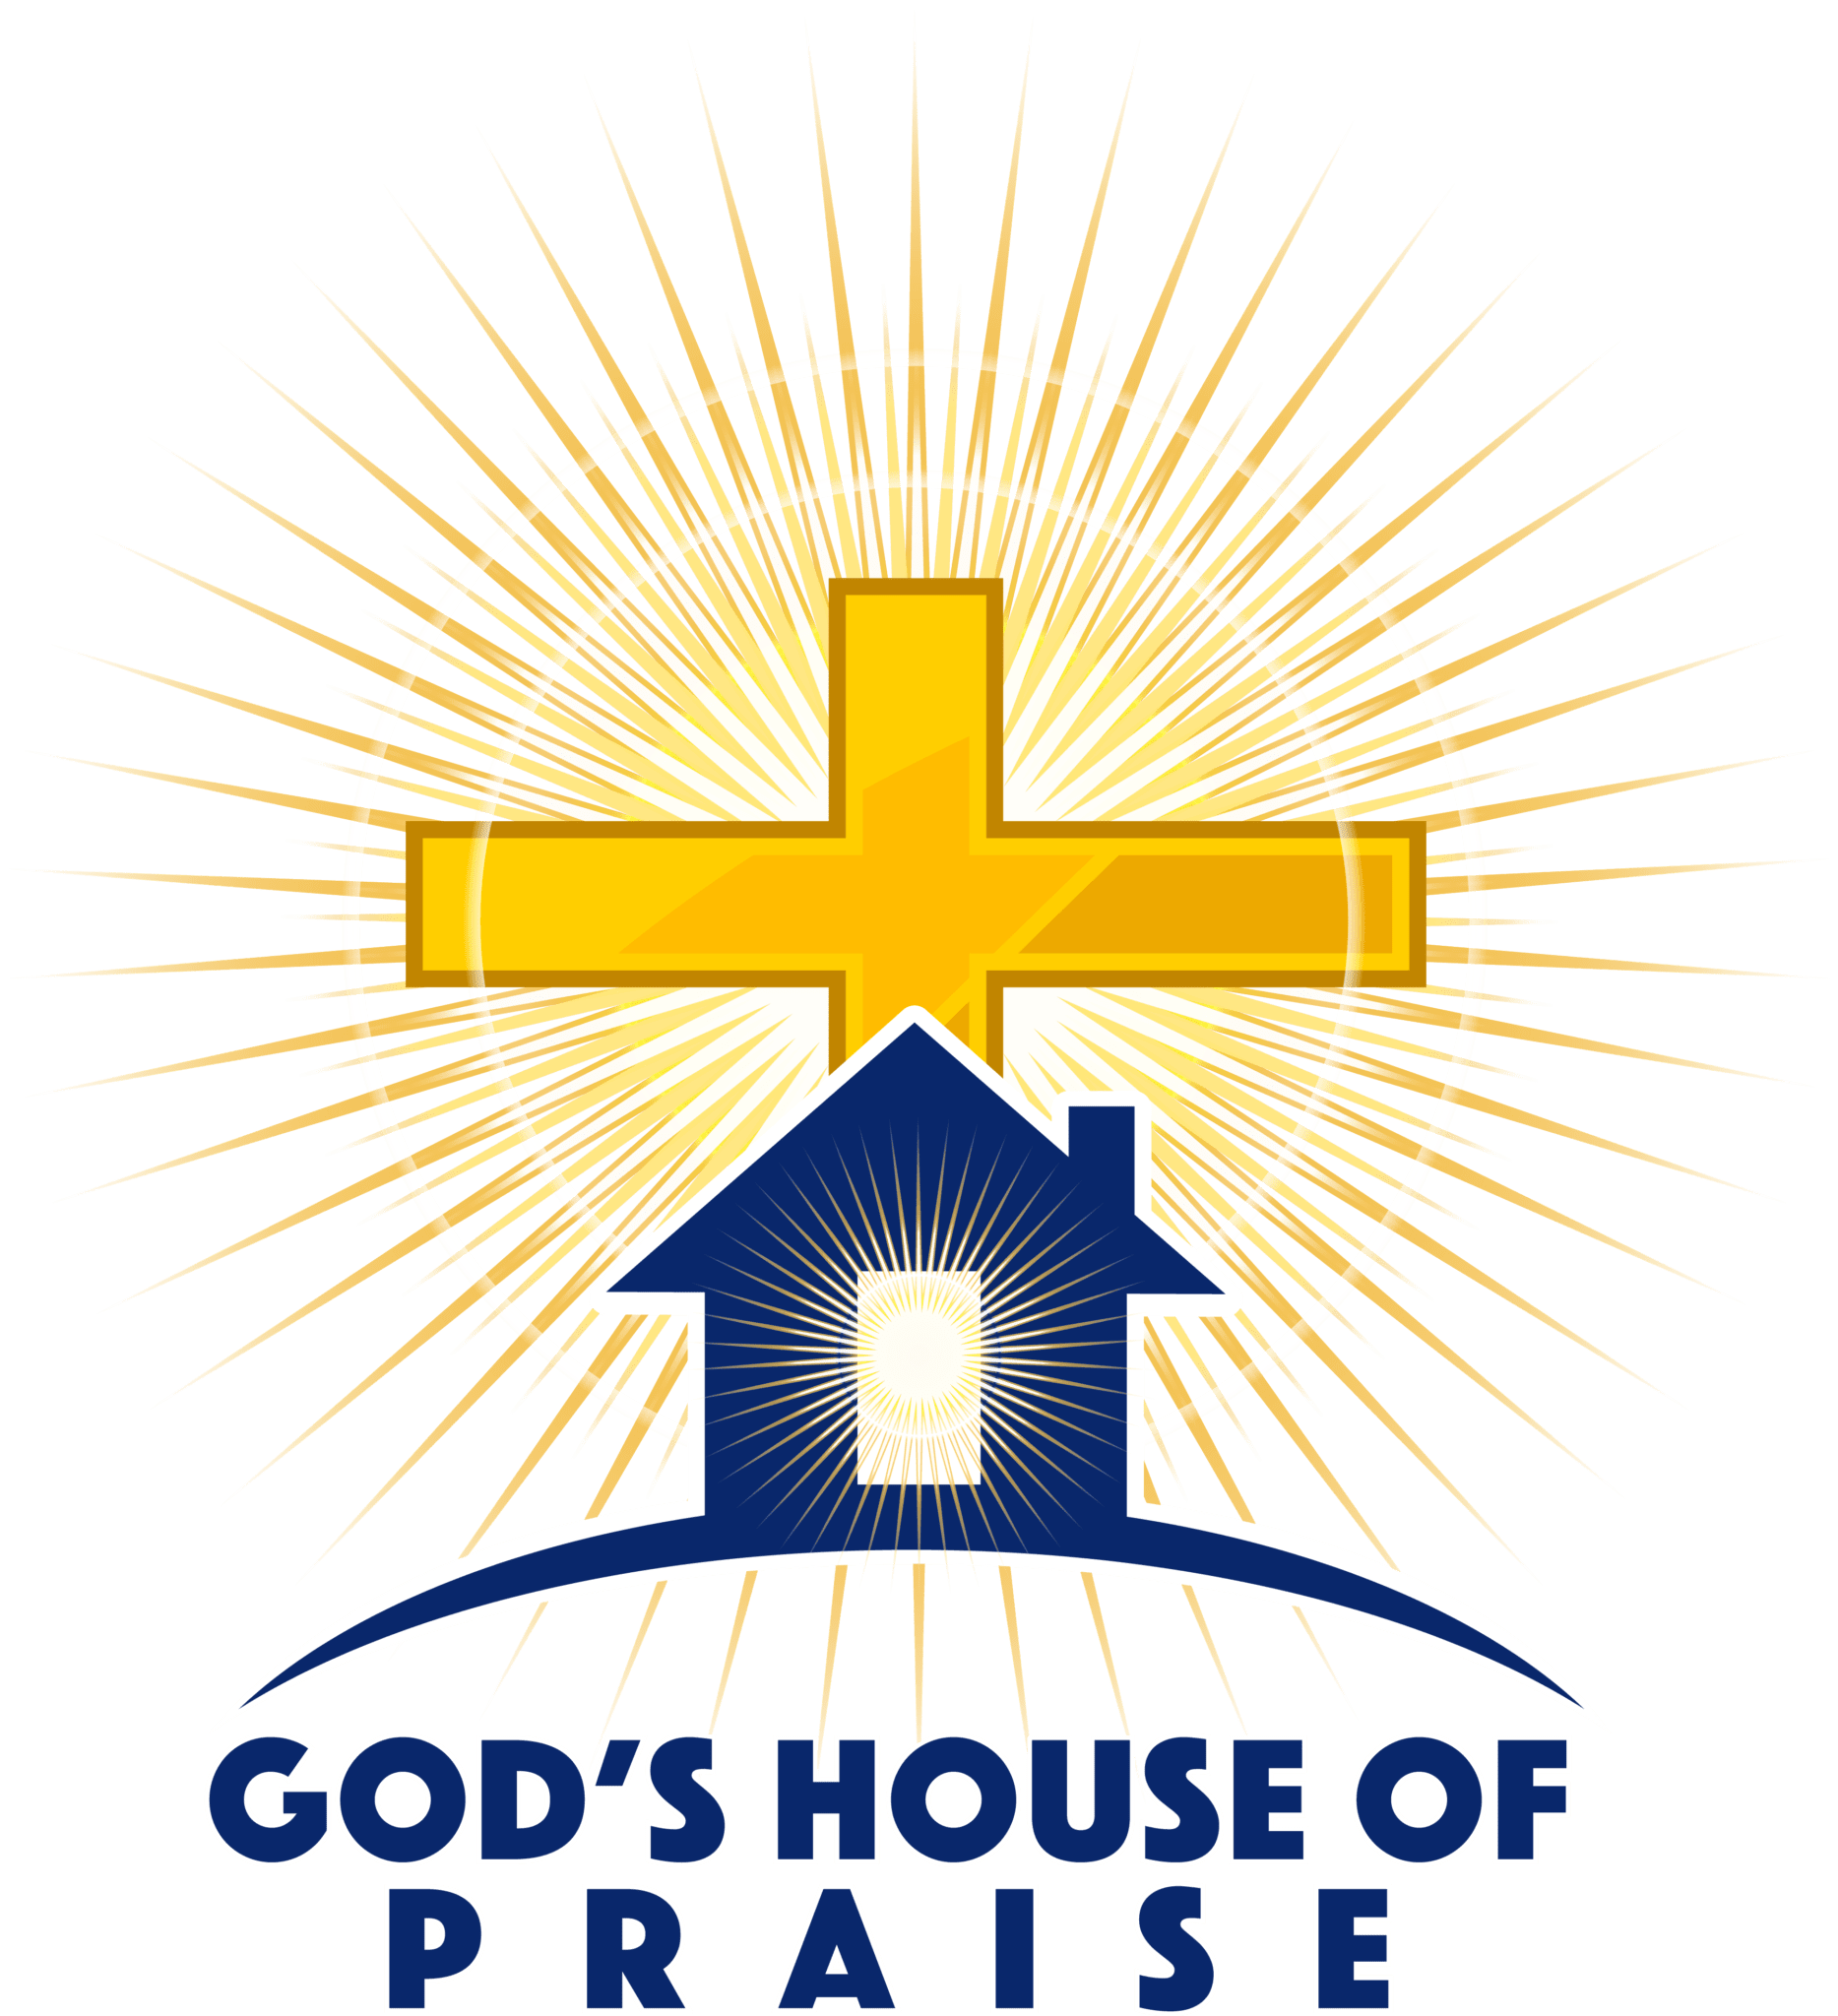 God's House of Praise (GHOP)